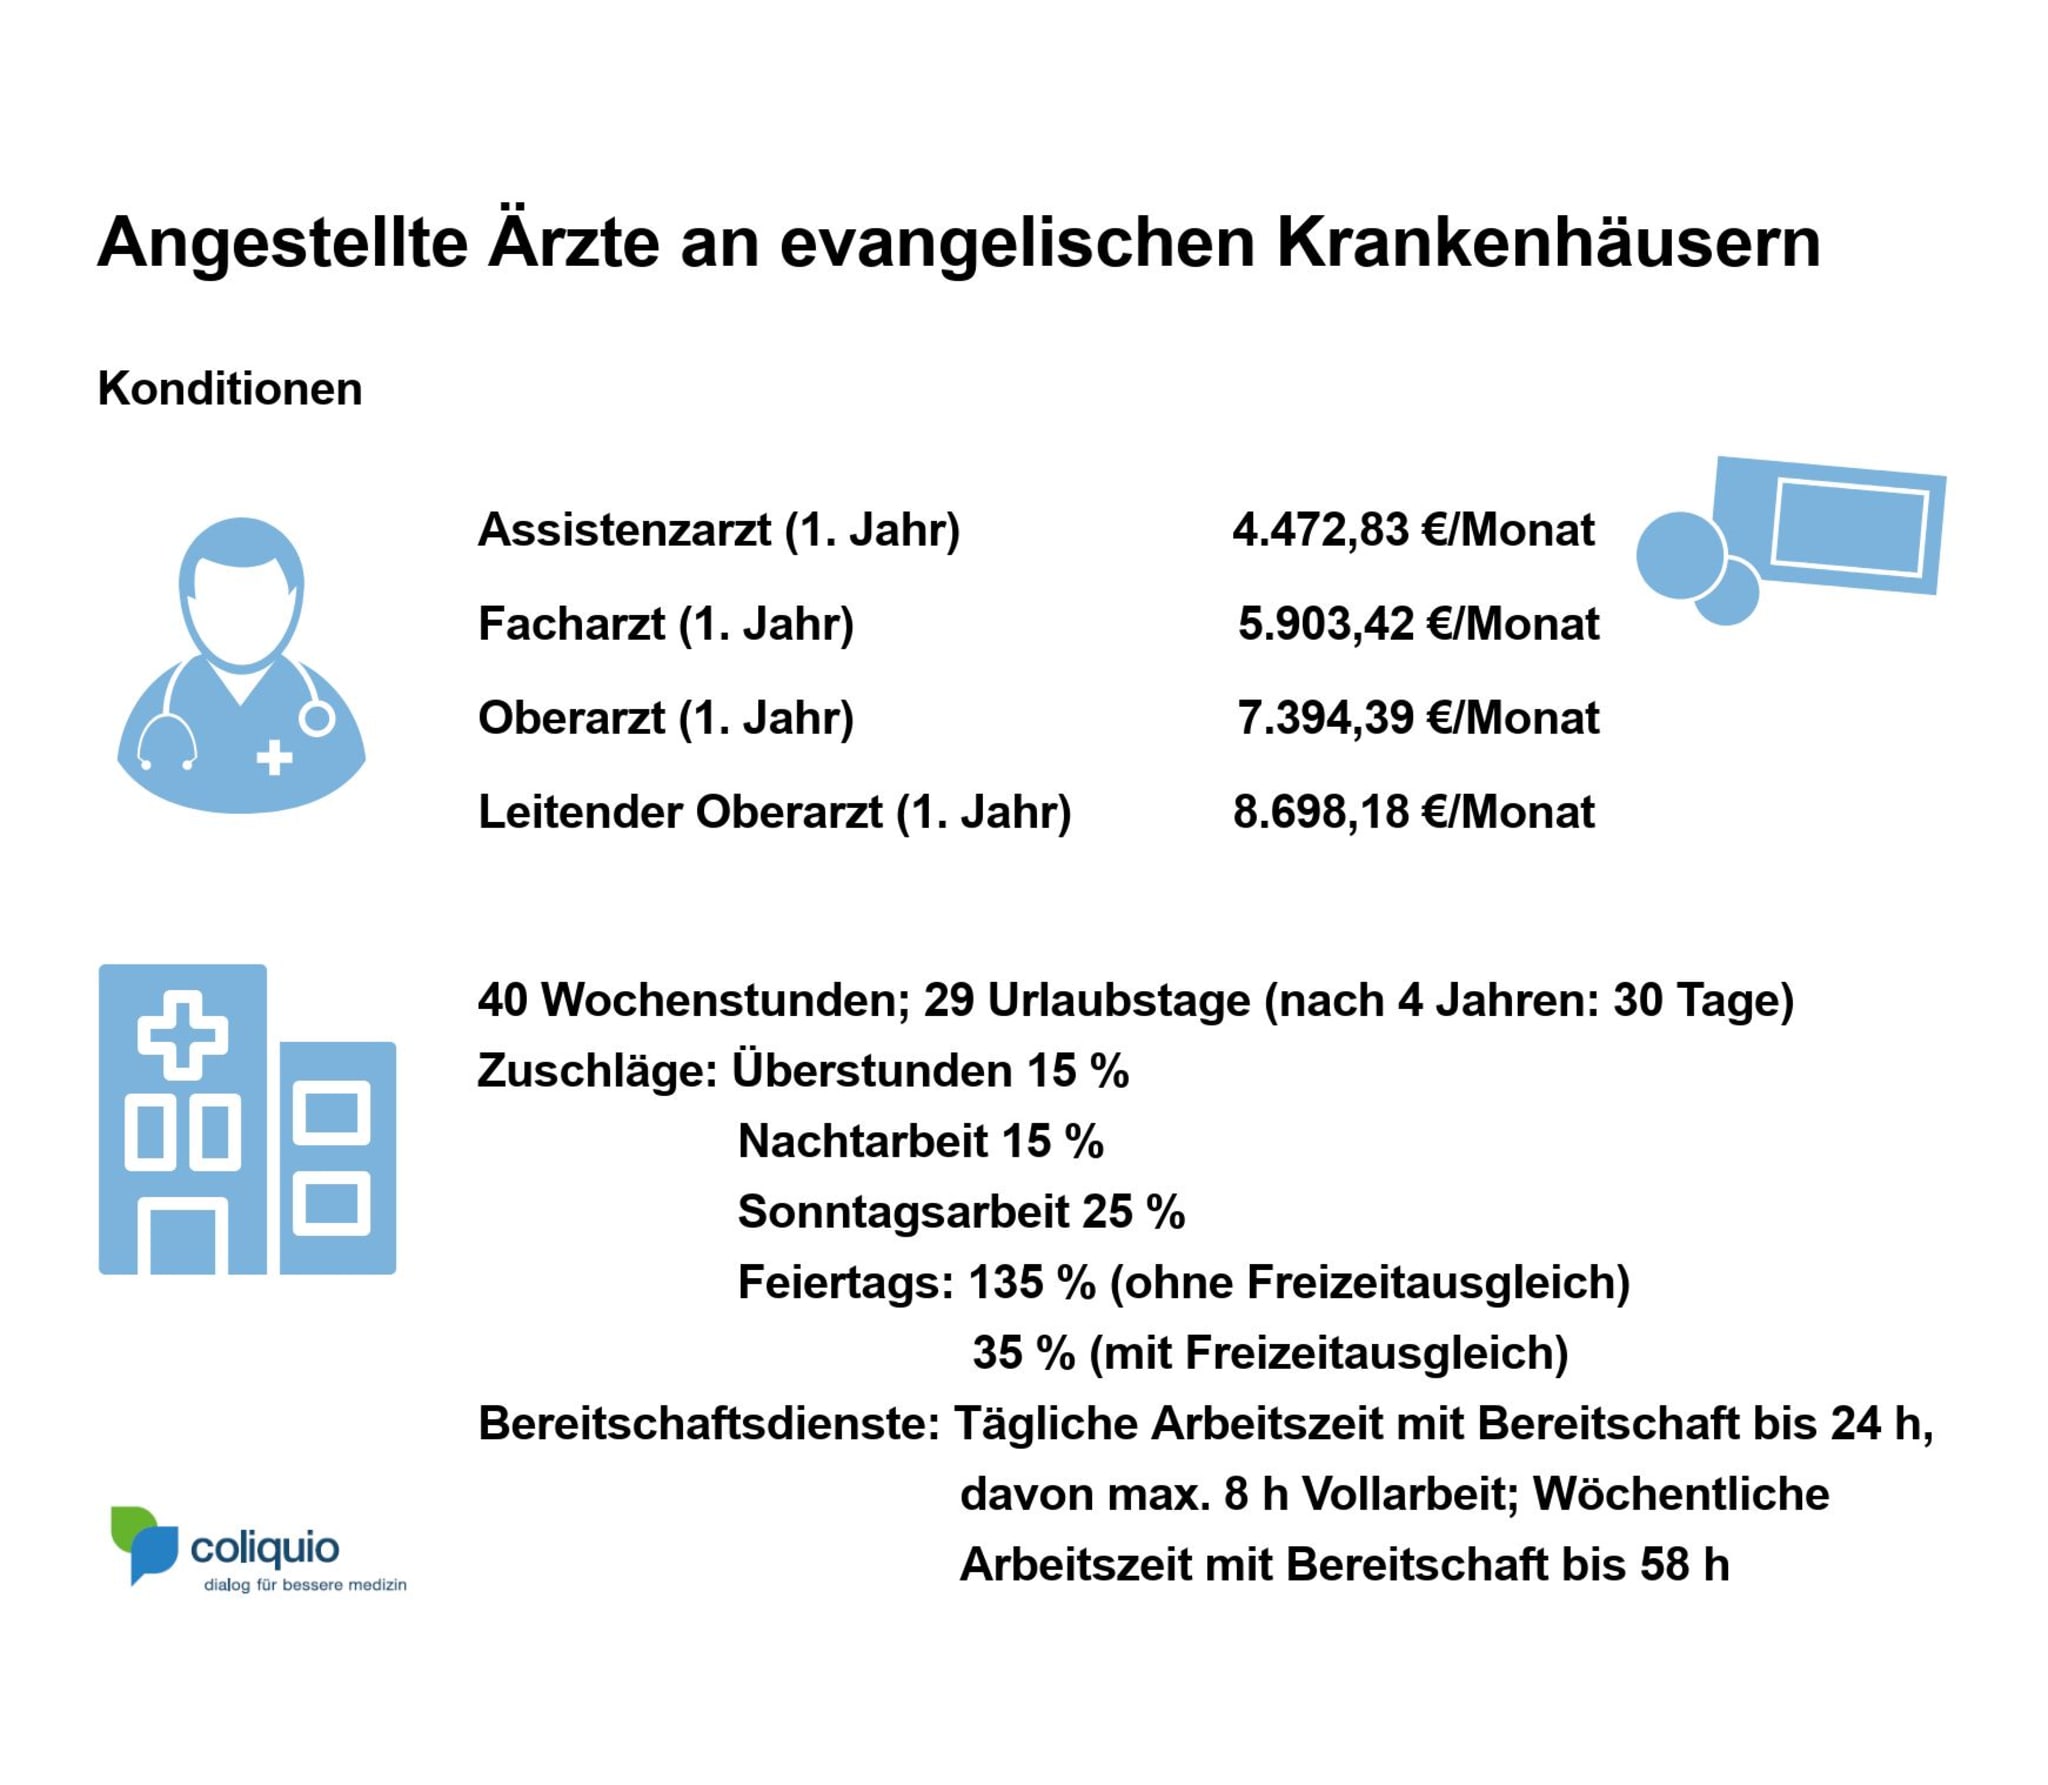 Übersicht der Arbeitsbedingungen für angestellte Ärzte an evangelischen Krankenhäusern. Die Zahlen gelten für Einrichtungen, die die Arbeitsvertragsrichtlinien der Diakonie Deutschland anwenden. 